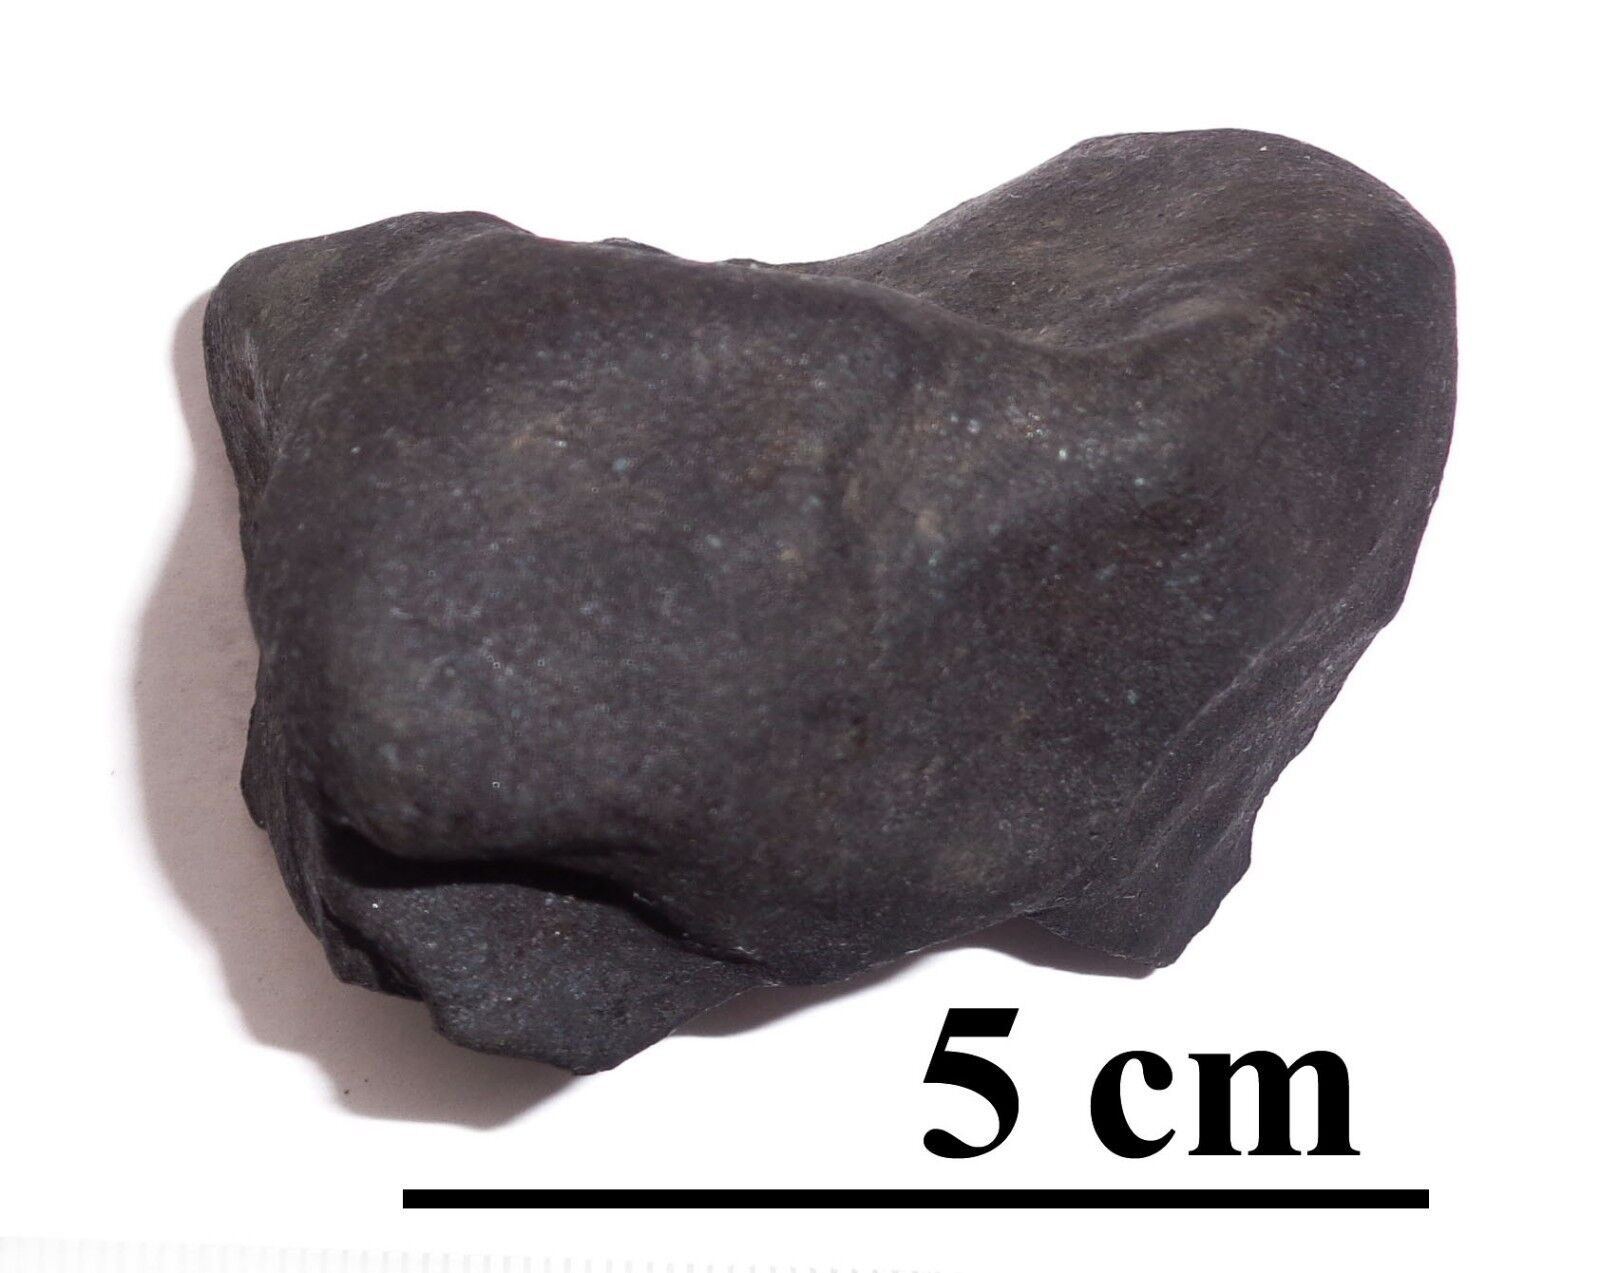 NEWEST OZERKI meteorite L6, fall June 21, 2018, Russia, individual 127 grams